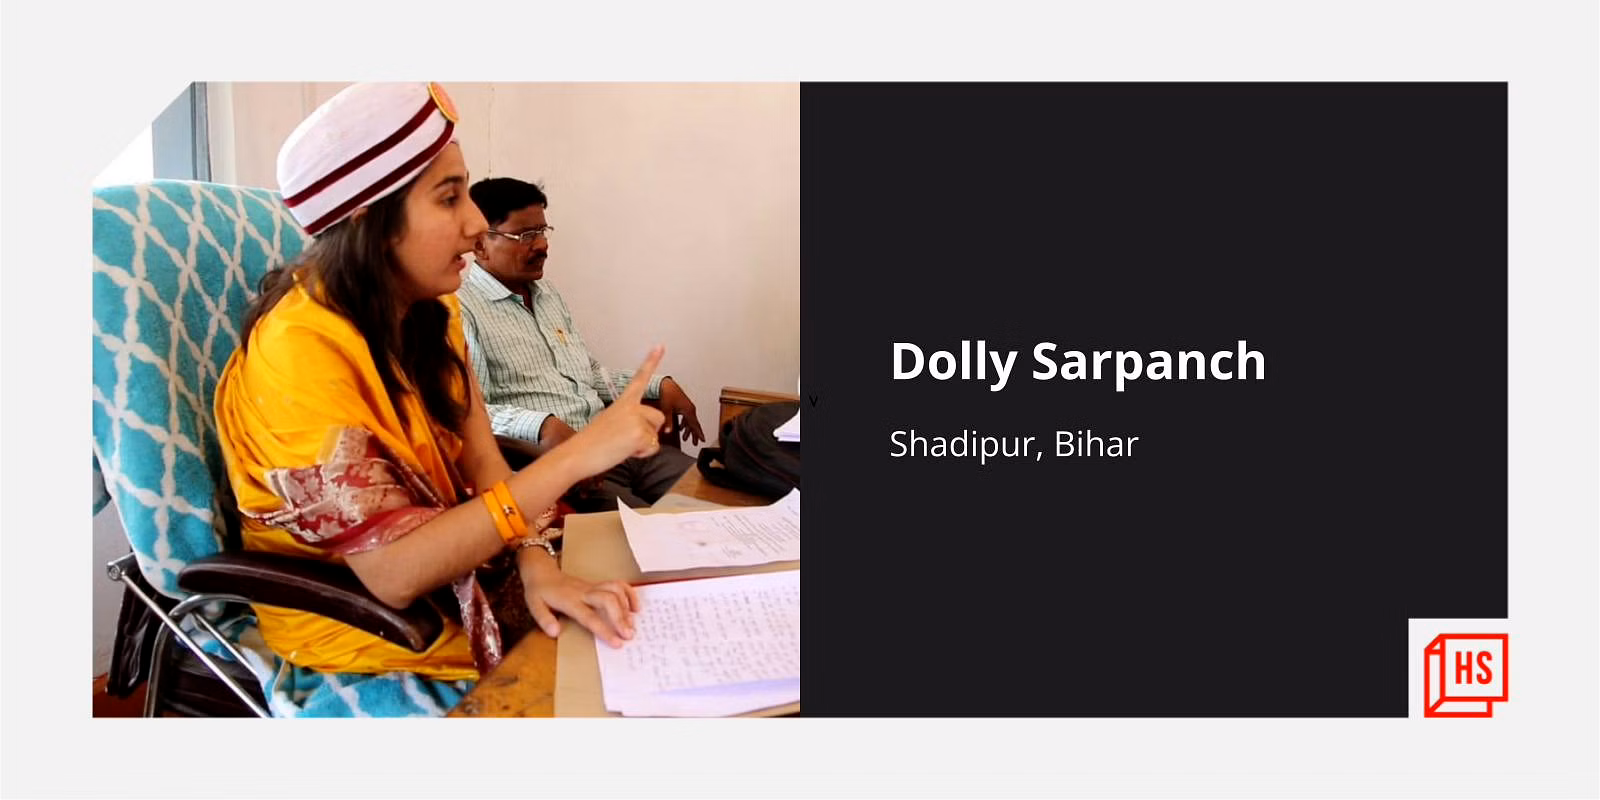 मिलिए डॉली सरपंच से, जो बिहार के गांवों में कर रही हैं कानून व्यवस्था का डिजिटलीकरण